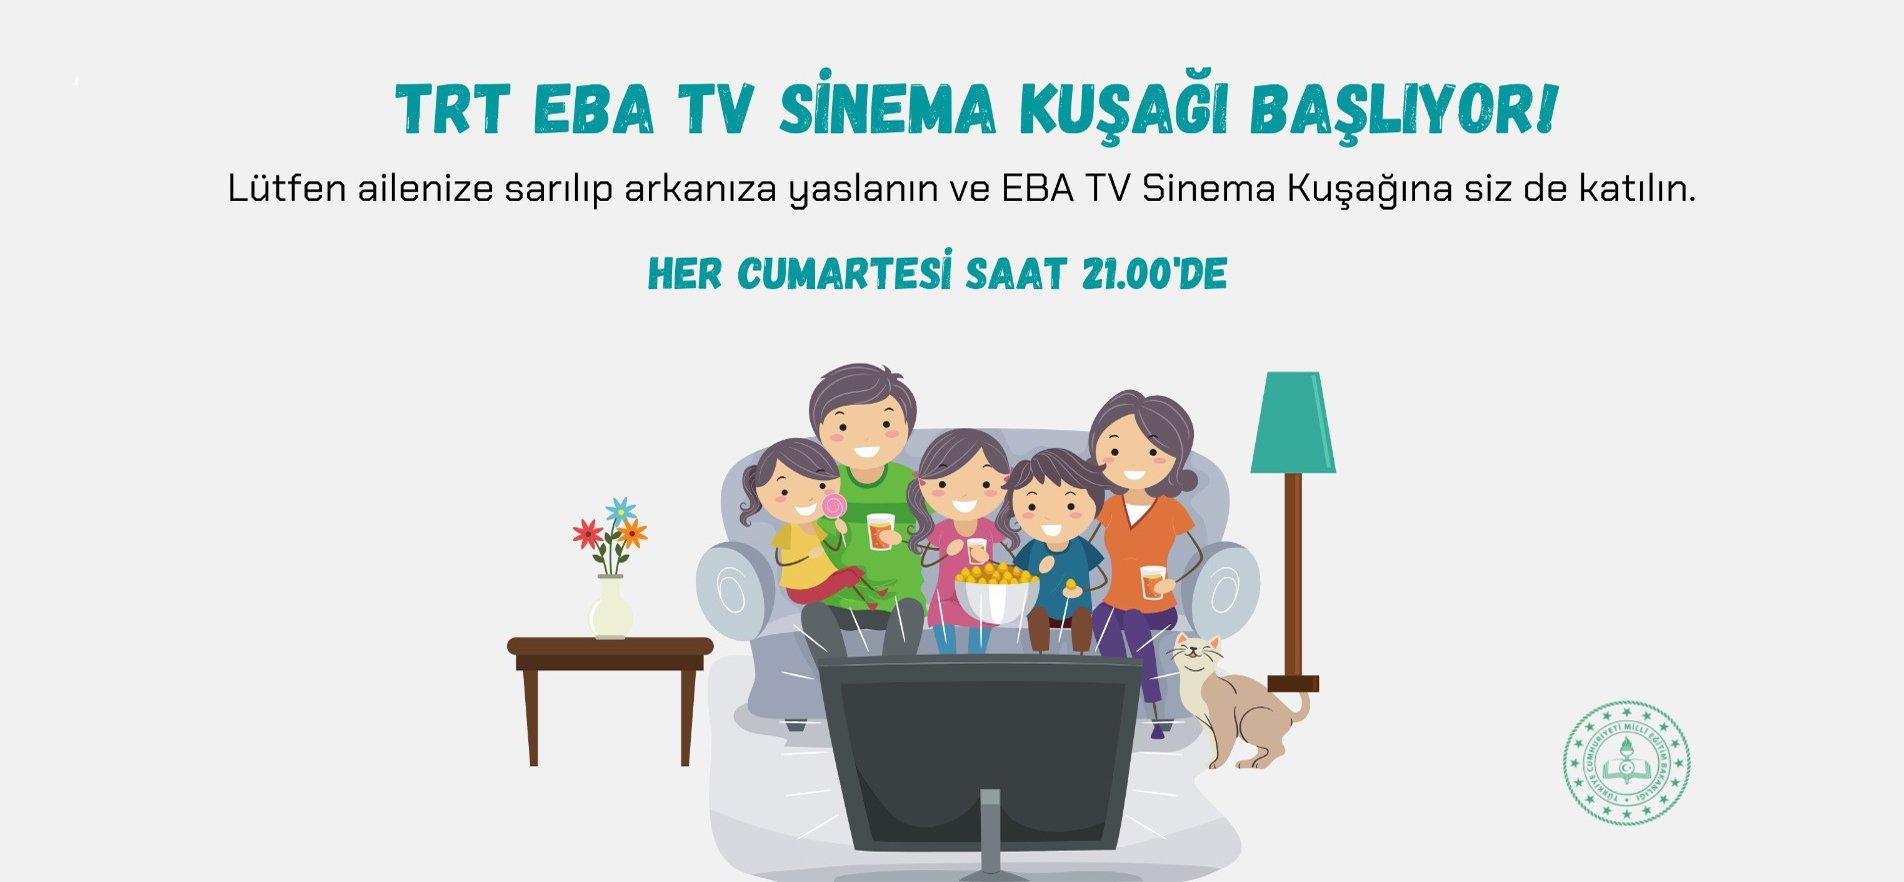 'EBA TV SİNEMA KUŞAĞI' BAŞLIYOR